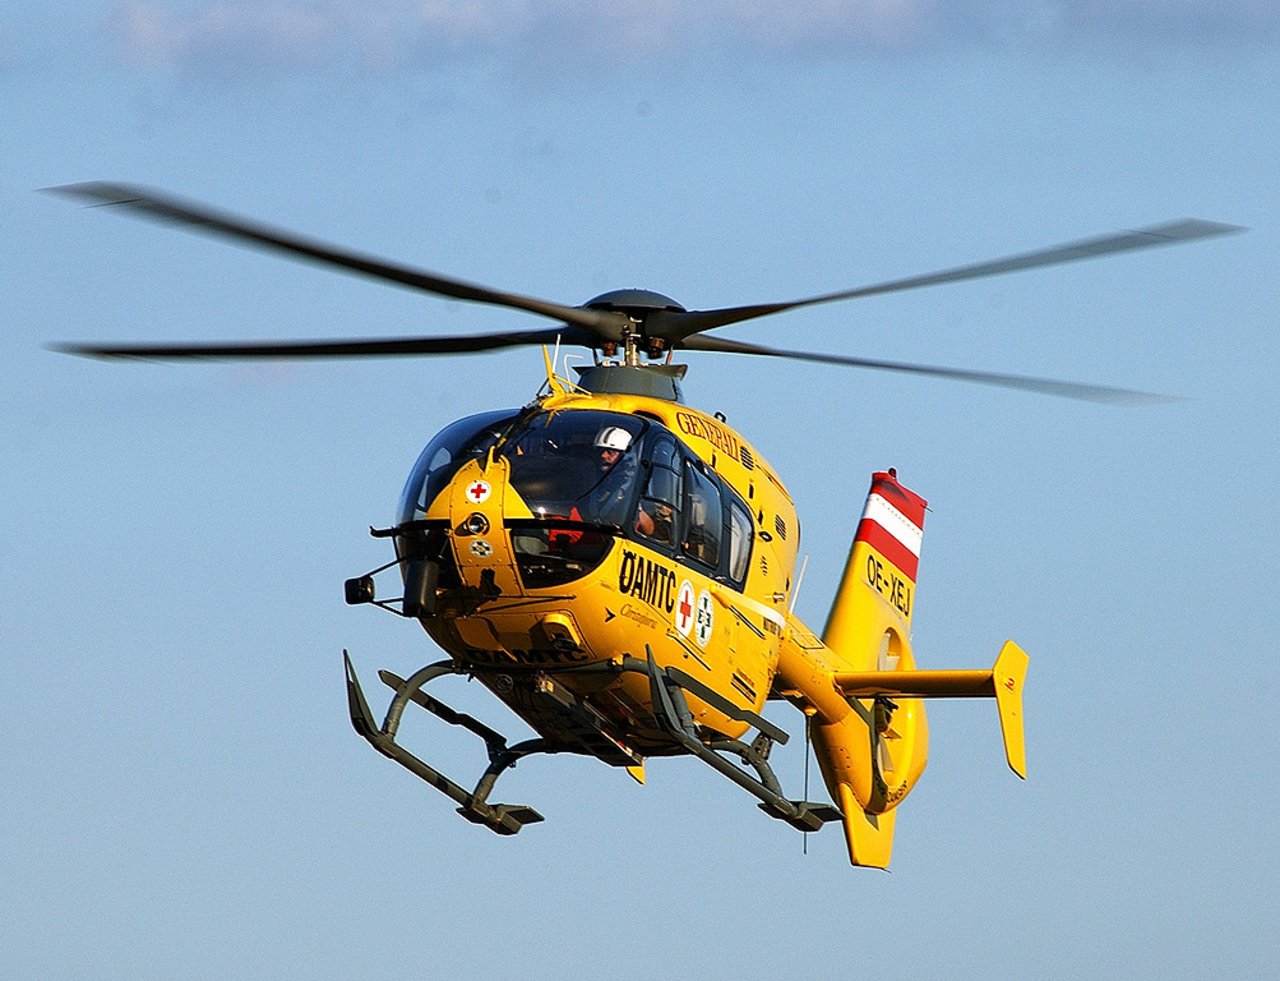 Österreichischer Rettungshelikopter. (Symbolbild Markus Schoepke/Flickr/CC BY-SA)